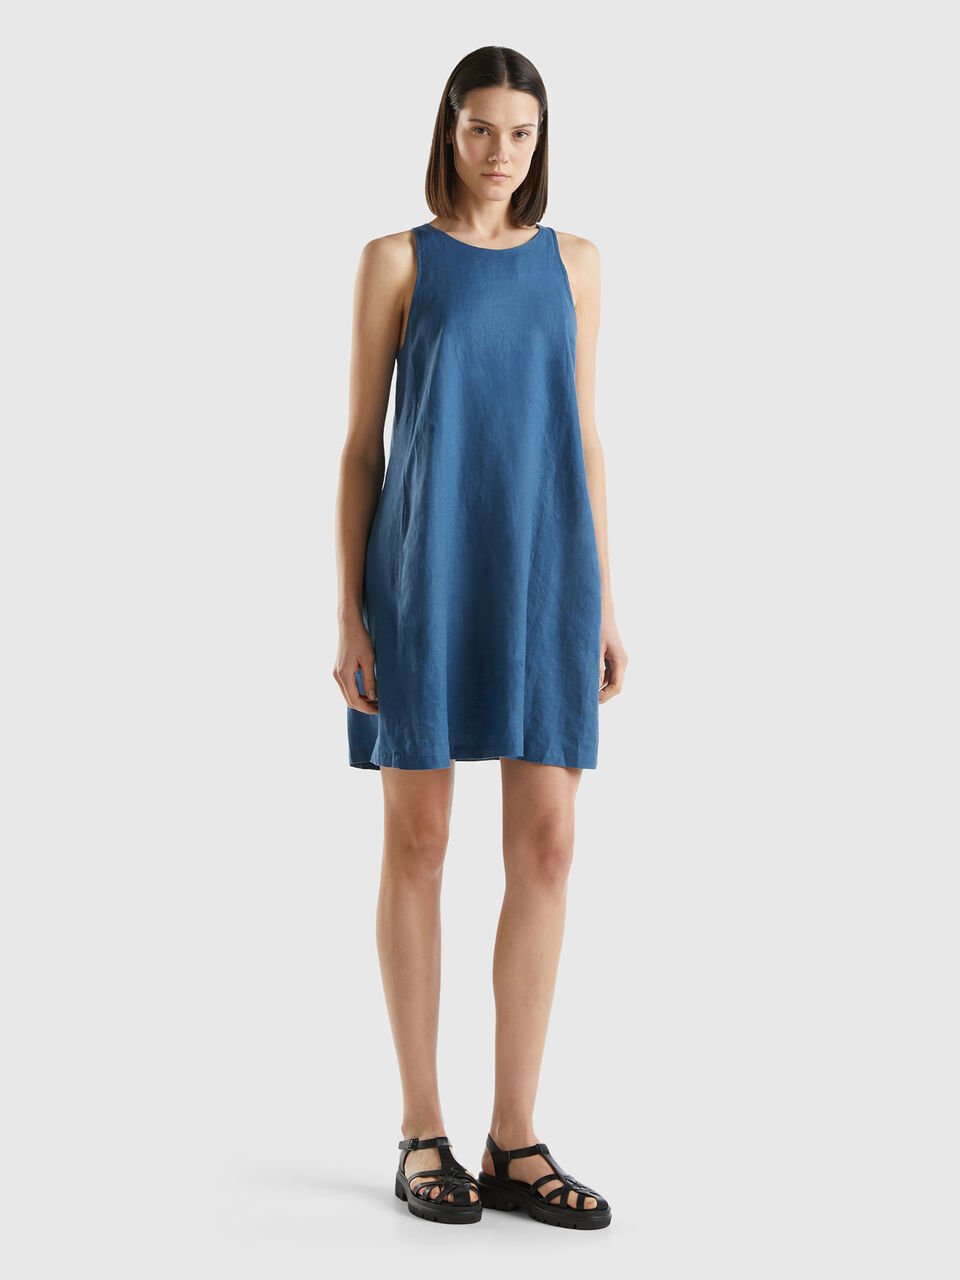 Sleeveless dress in pure linen - Blue